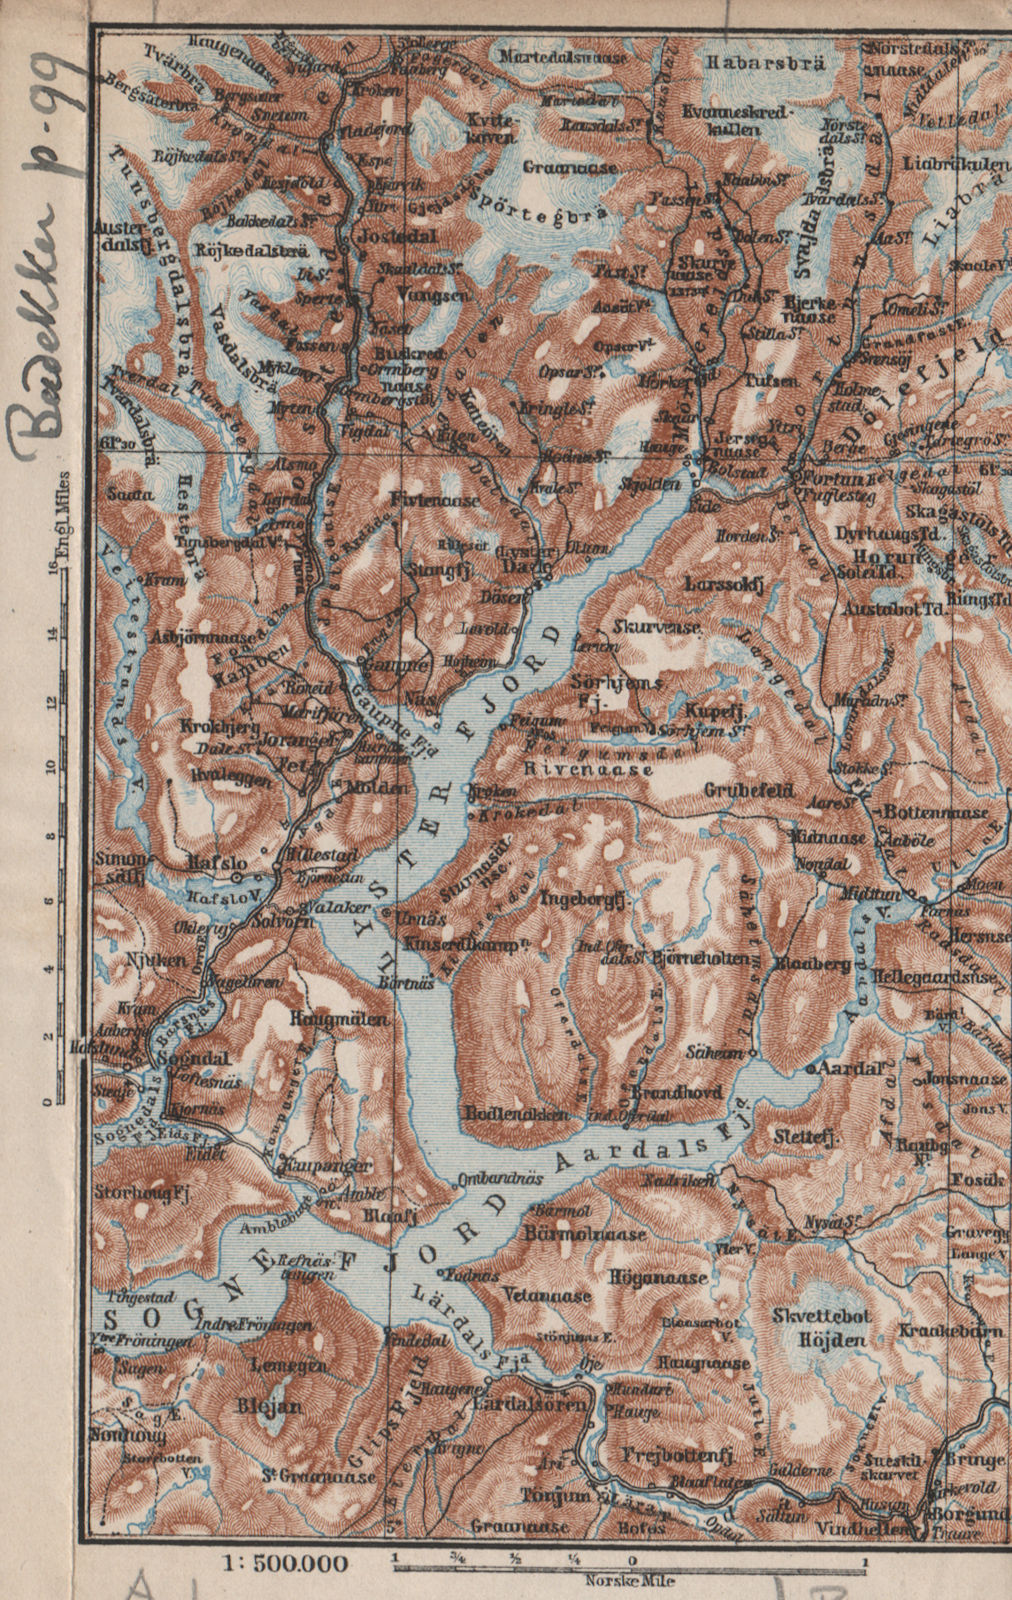 INNER SOGNEFJORD topo-map. Gaupne Luster Ardalstangen. Norway kart 1885